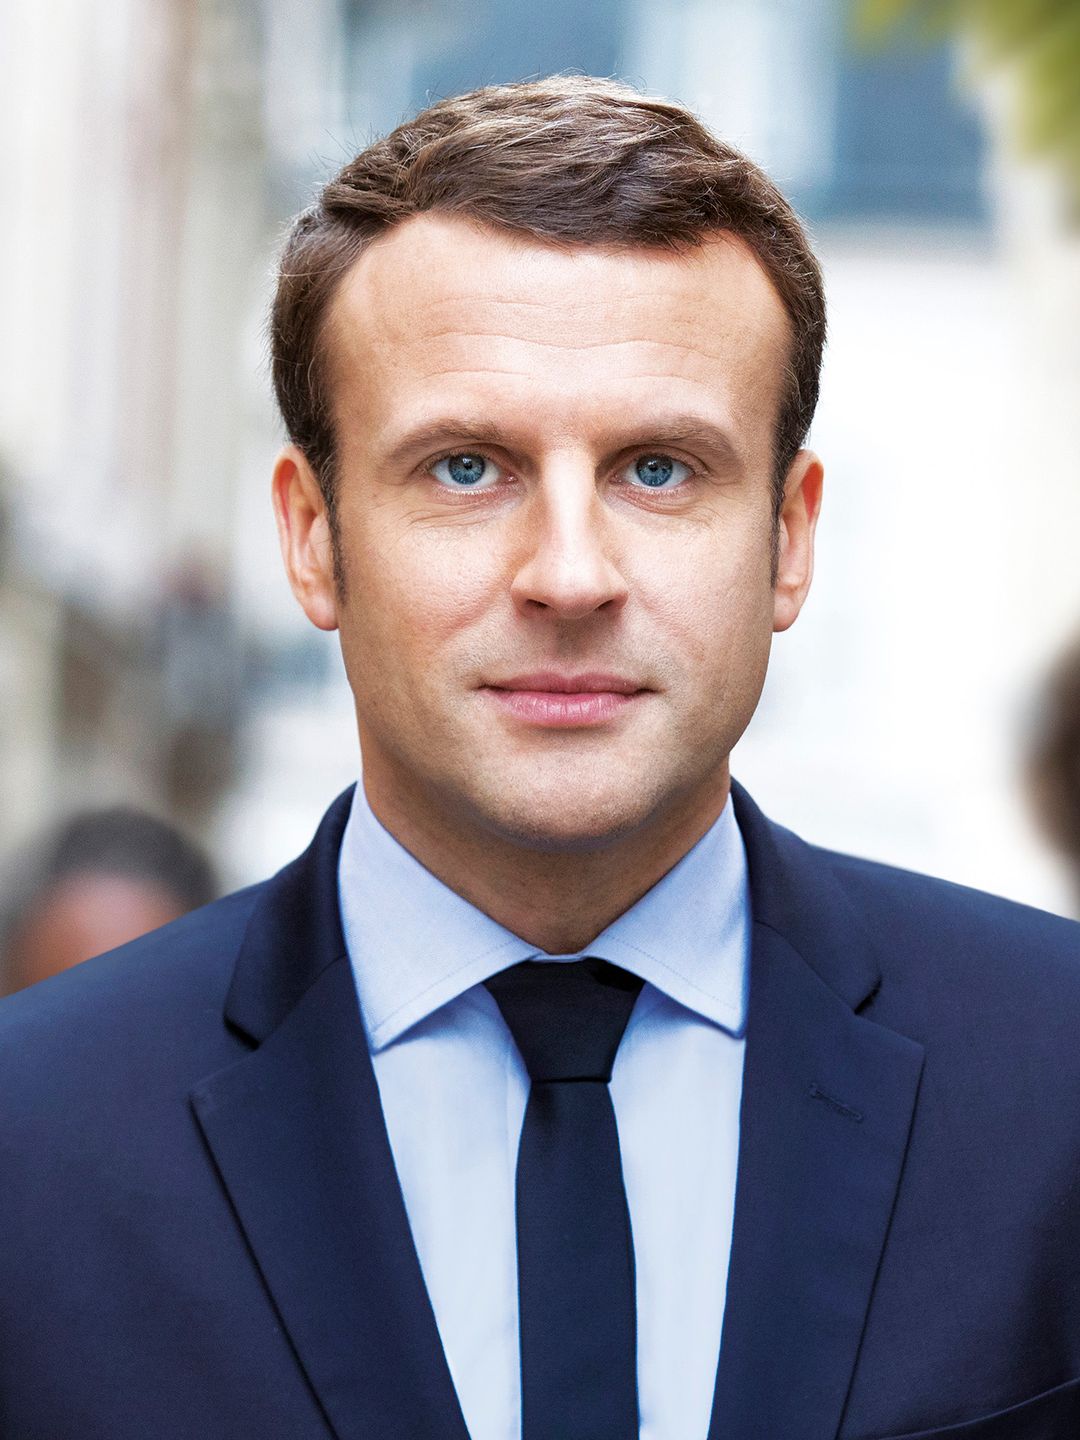 Emmanuel Macron life path